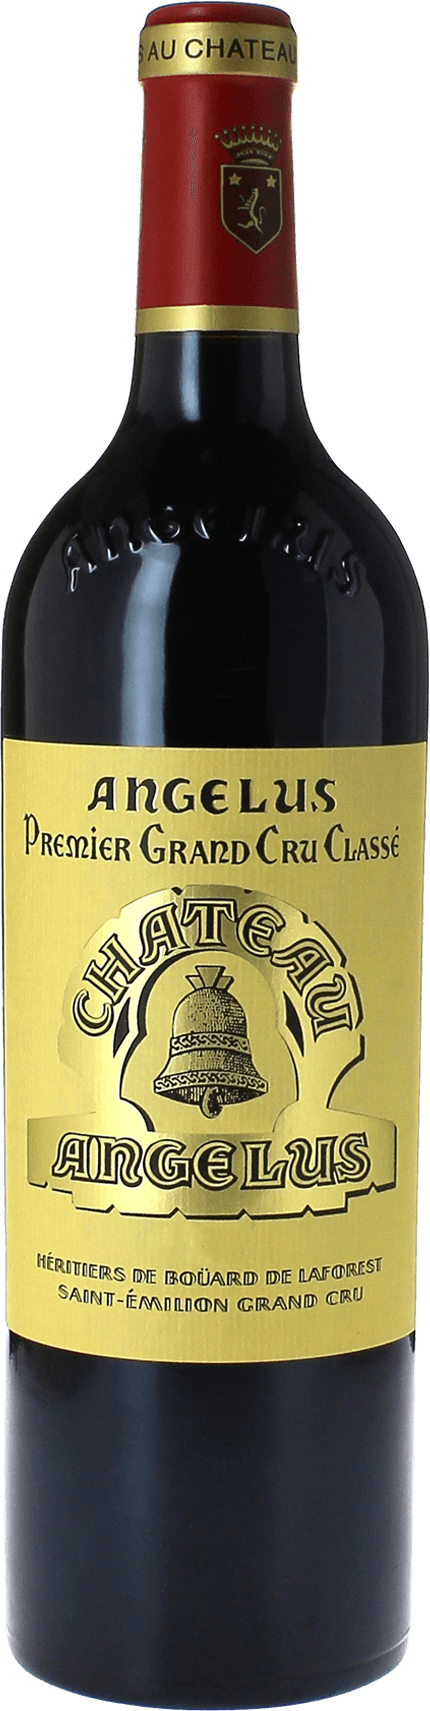 Angelus 1989 1er Grand cru class A Saint-Emilion, Bordeaux rouge